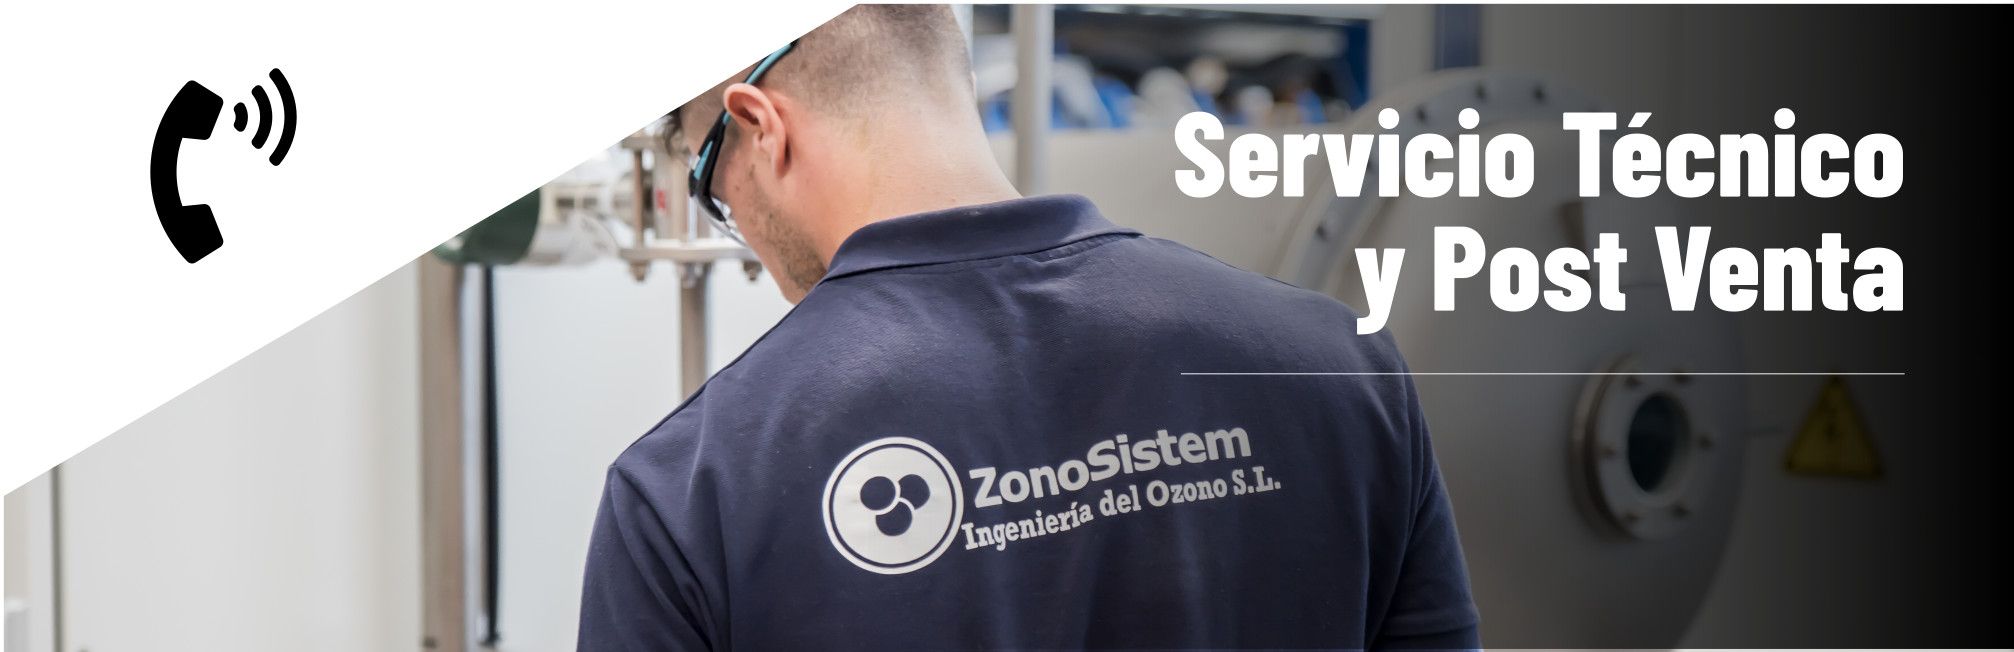 ZonoSistem a participé avec grand succès à "ExpoFare" les technologies d'irrigation les plus avancées